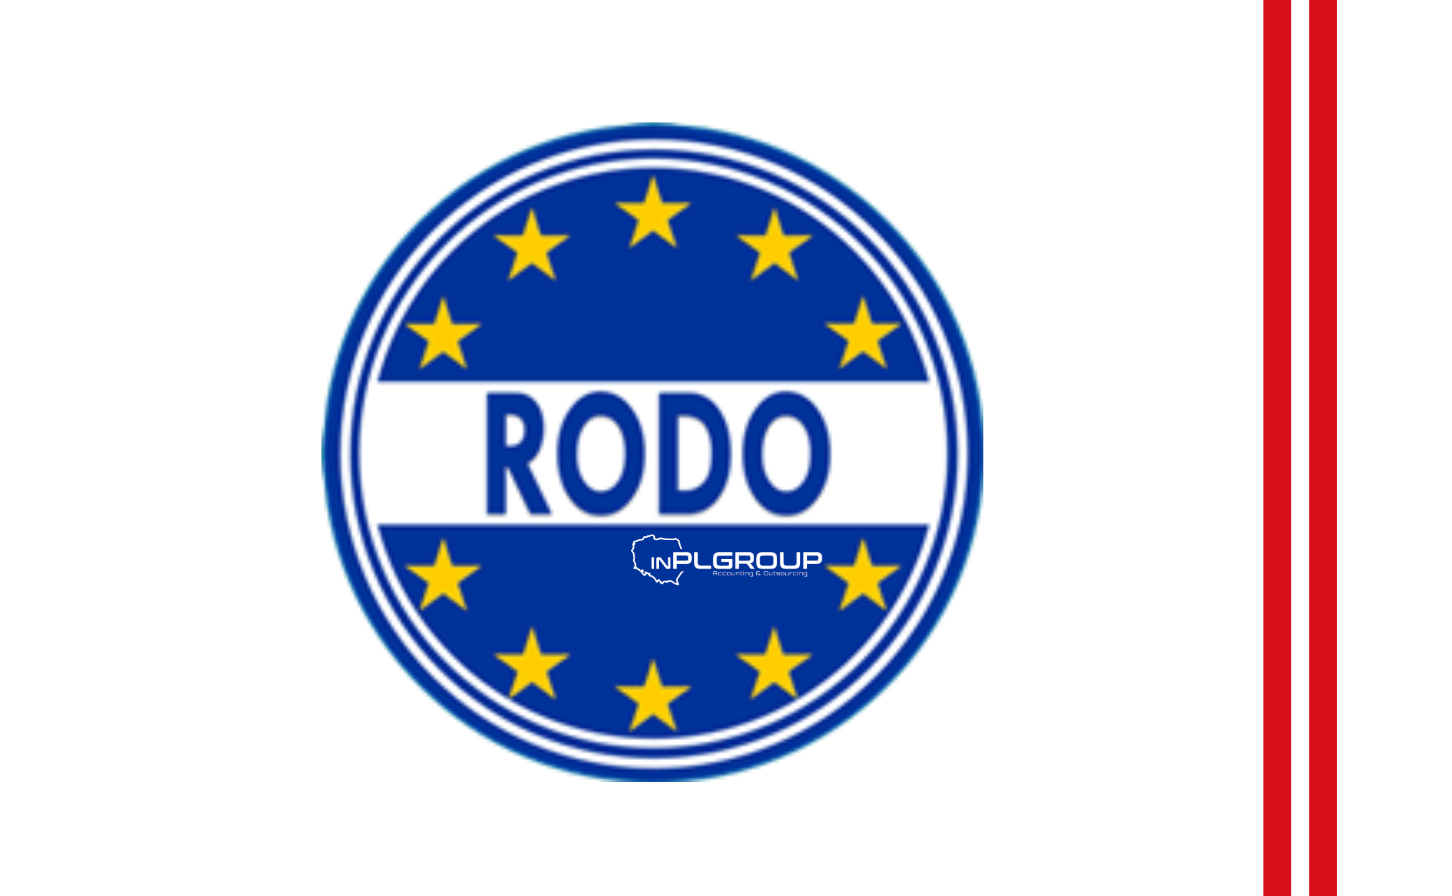 News in RODO 2019